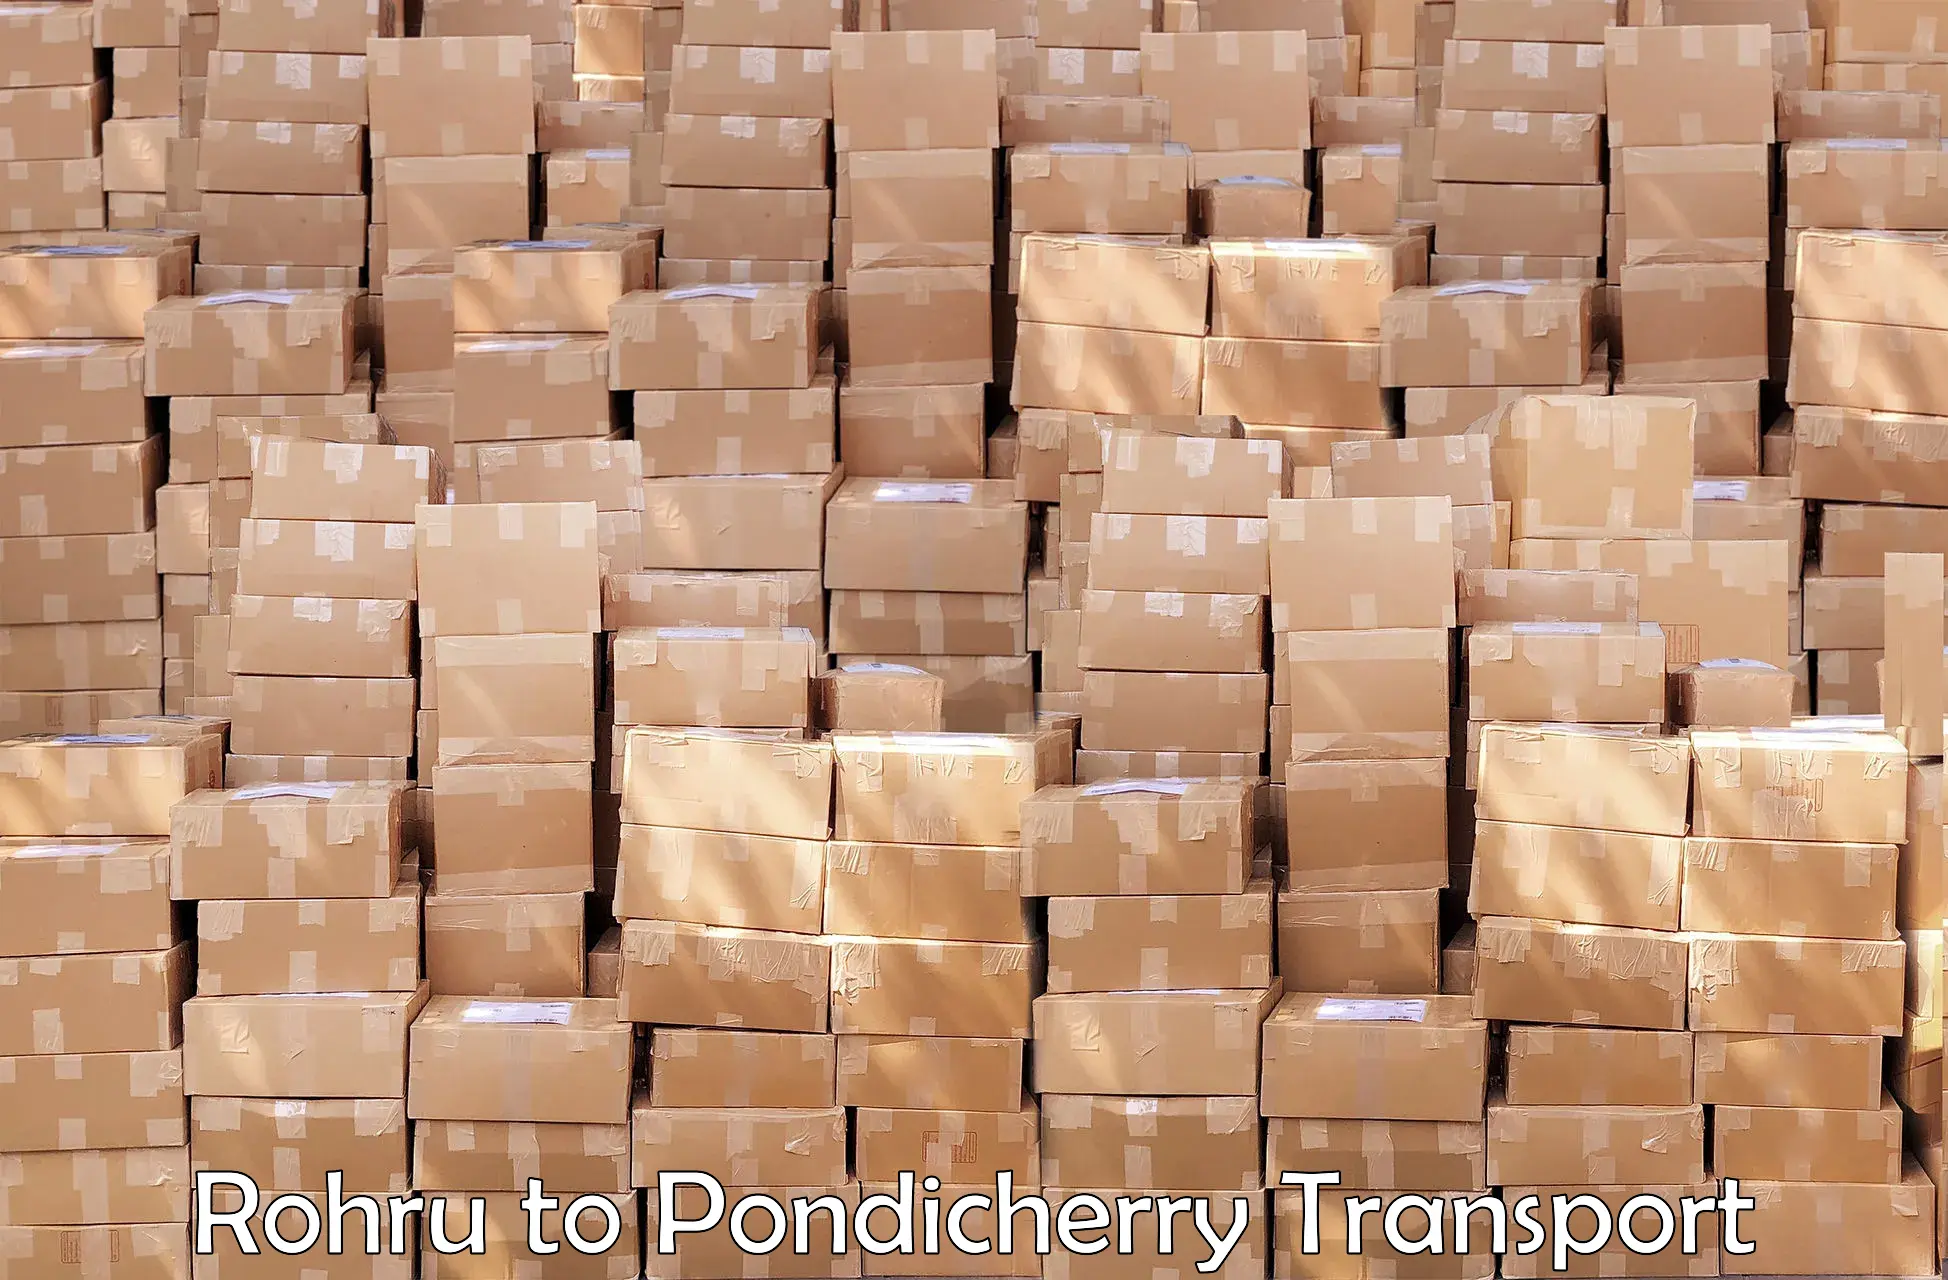 Daily parcel service transport Rohru to Pondicherry University